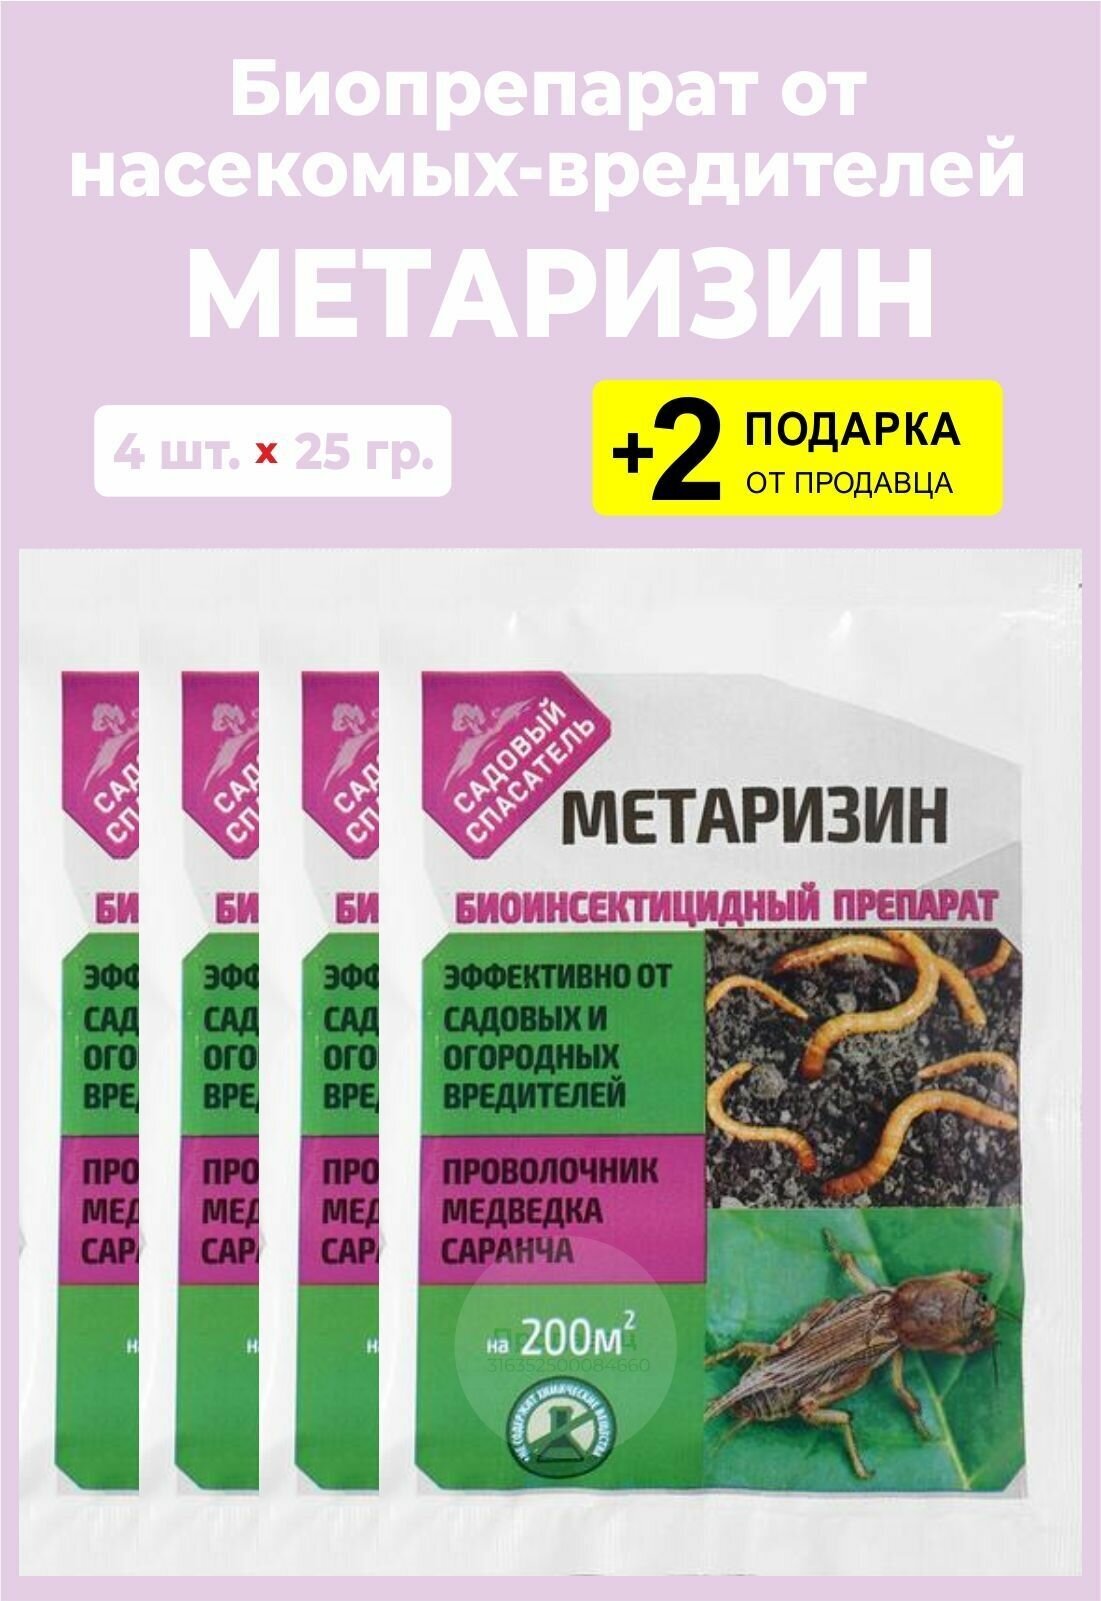 Биопрепарат от комплекса вредителей "Метаризин", 25 гр., 4 упаковки + 2 Подарка